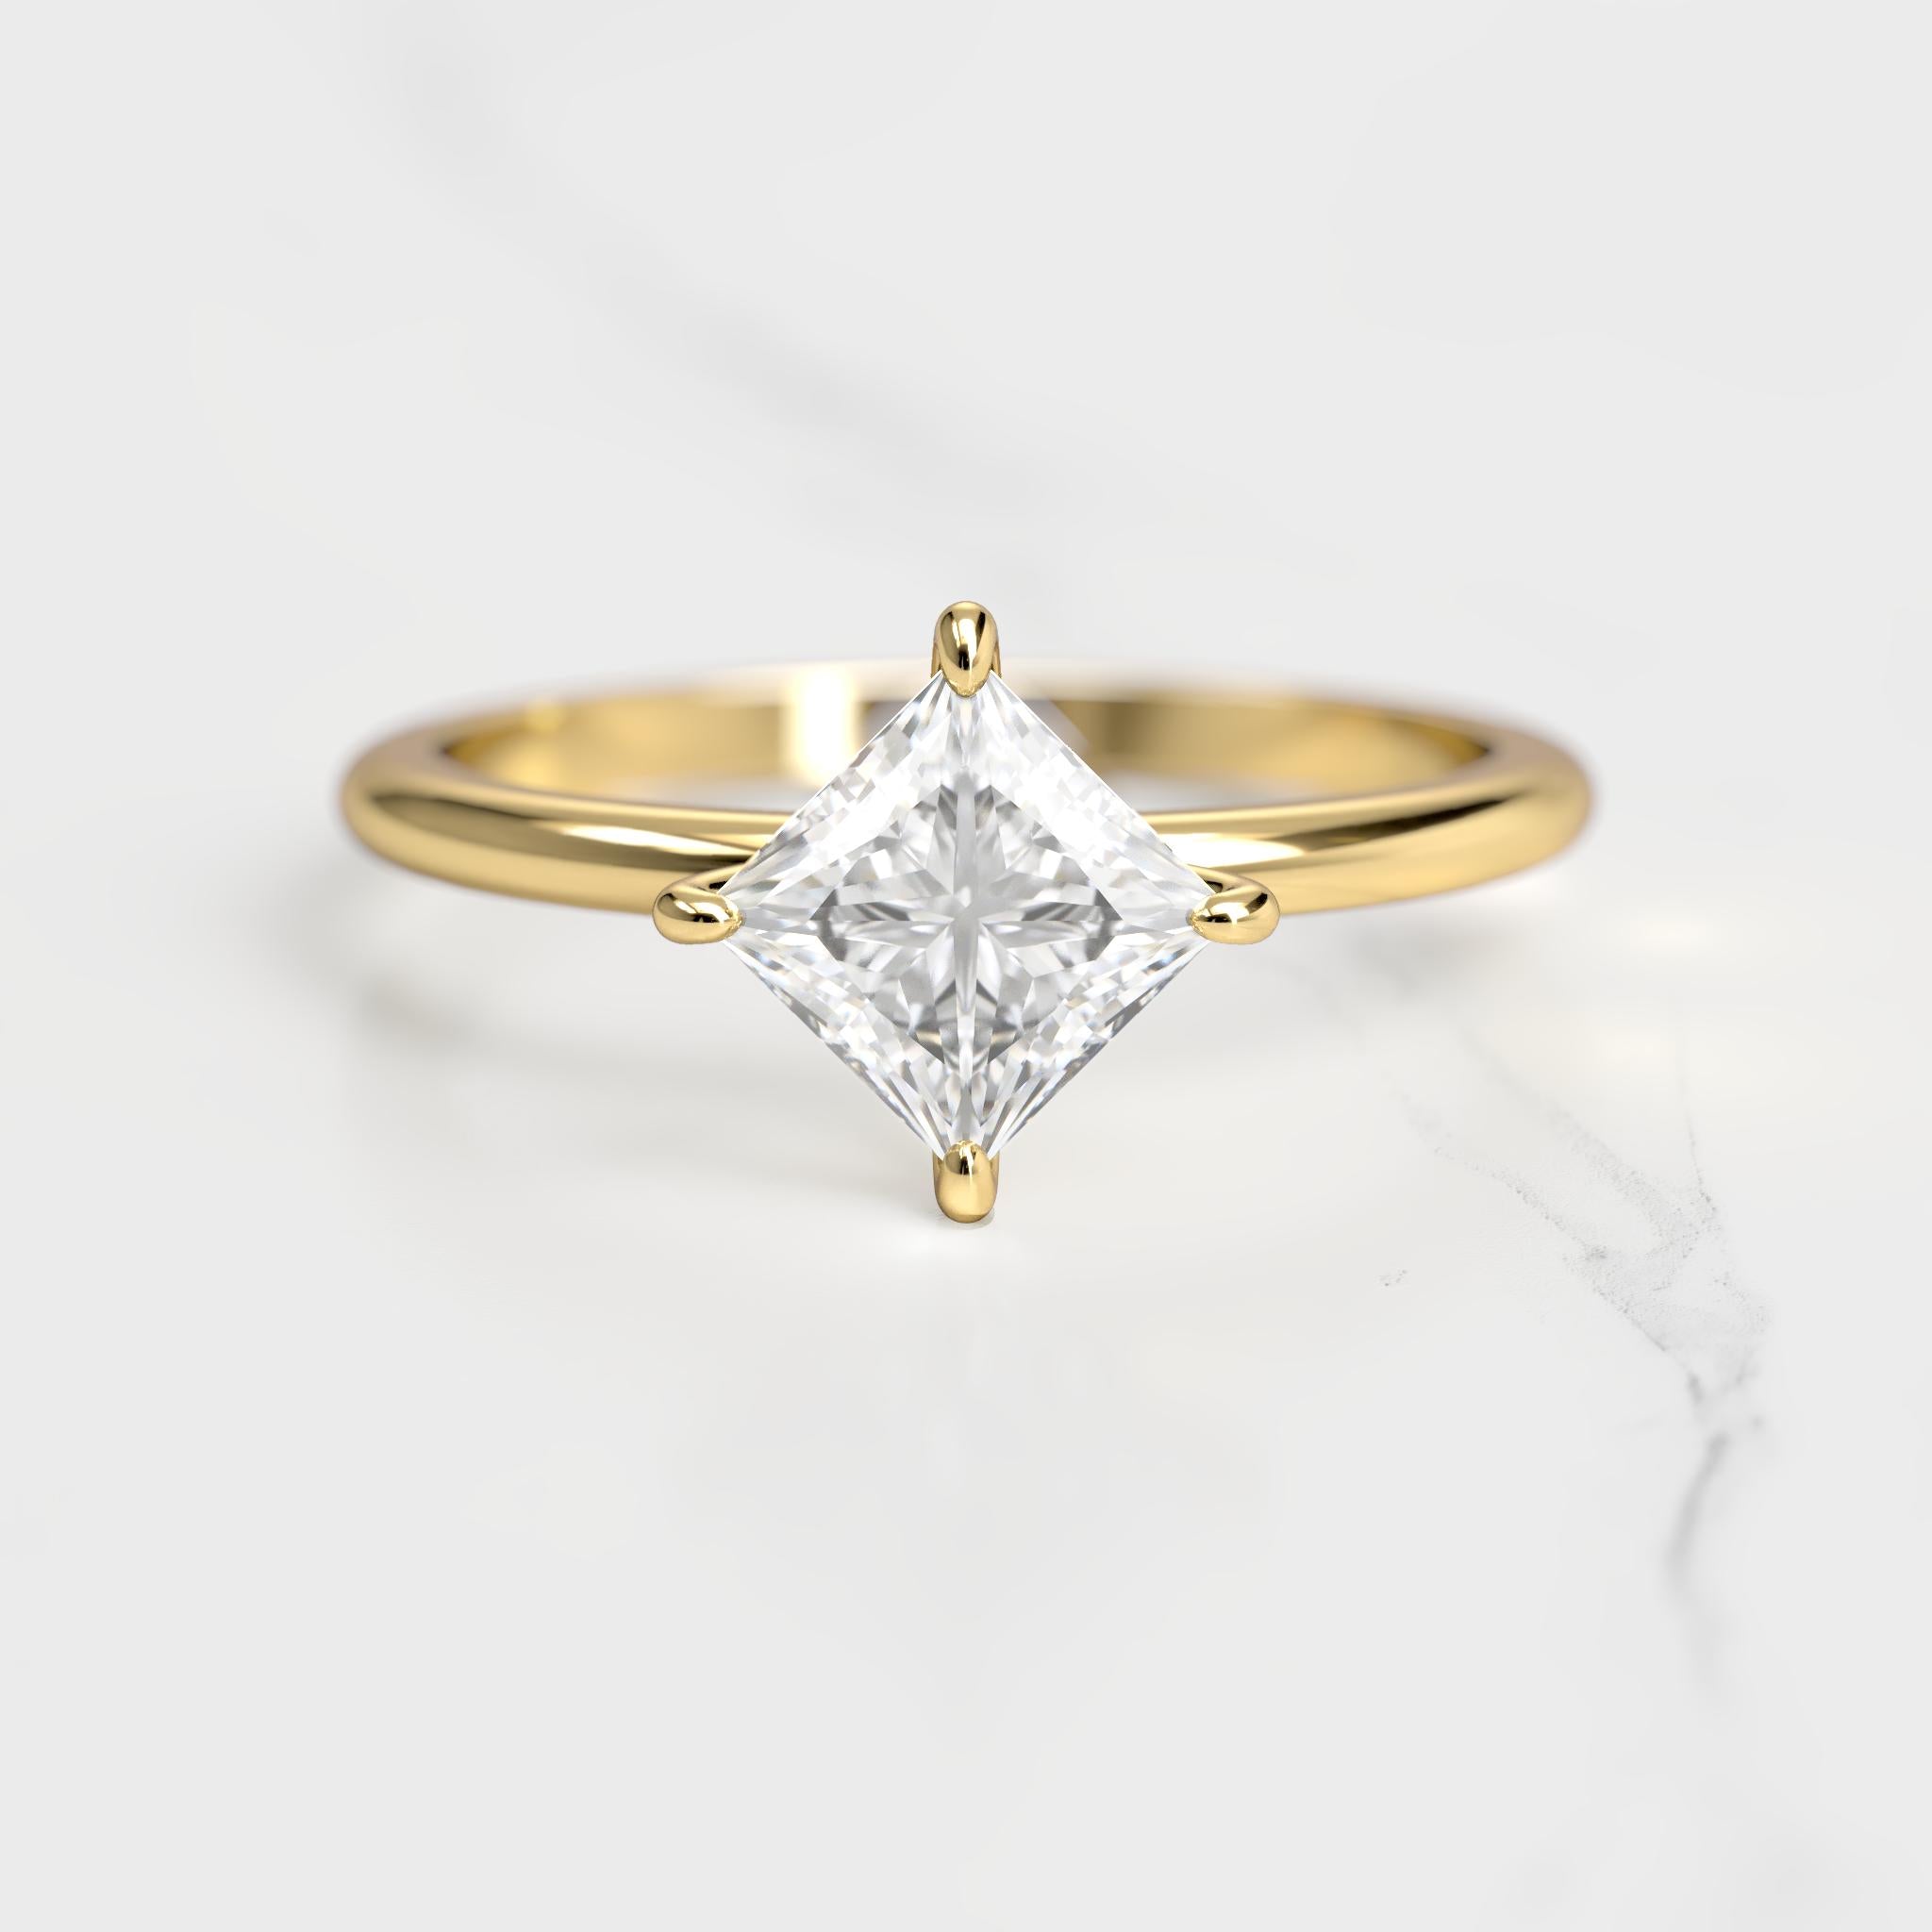 Princess Solitaire Diamond Ring - 18k yellow gold / 1.50ct / lab diamond